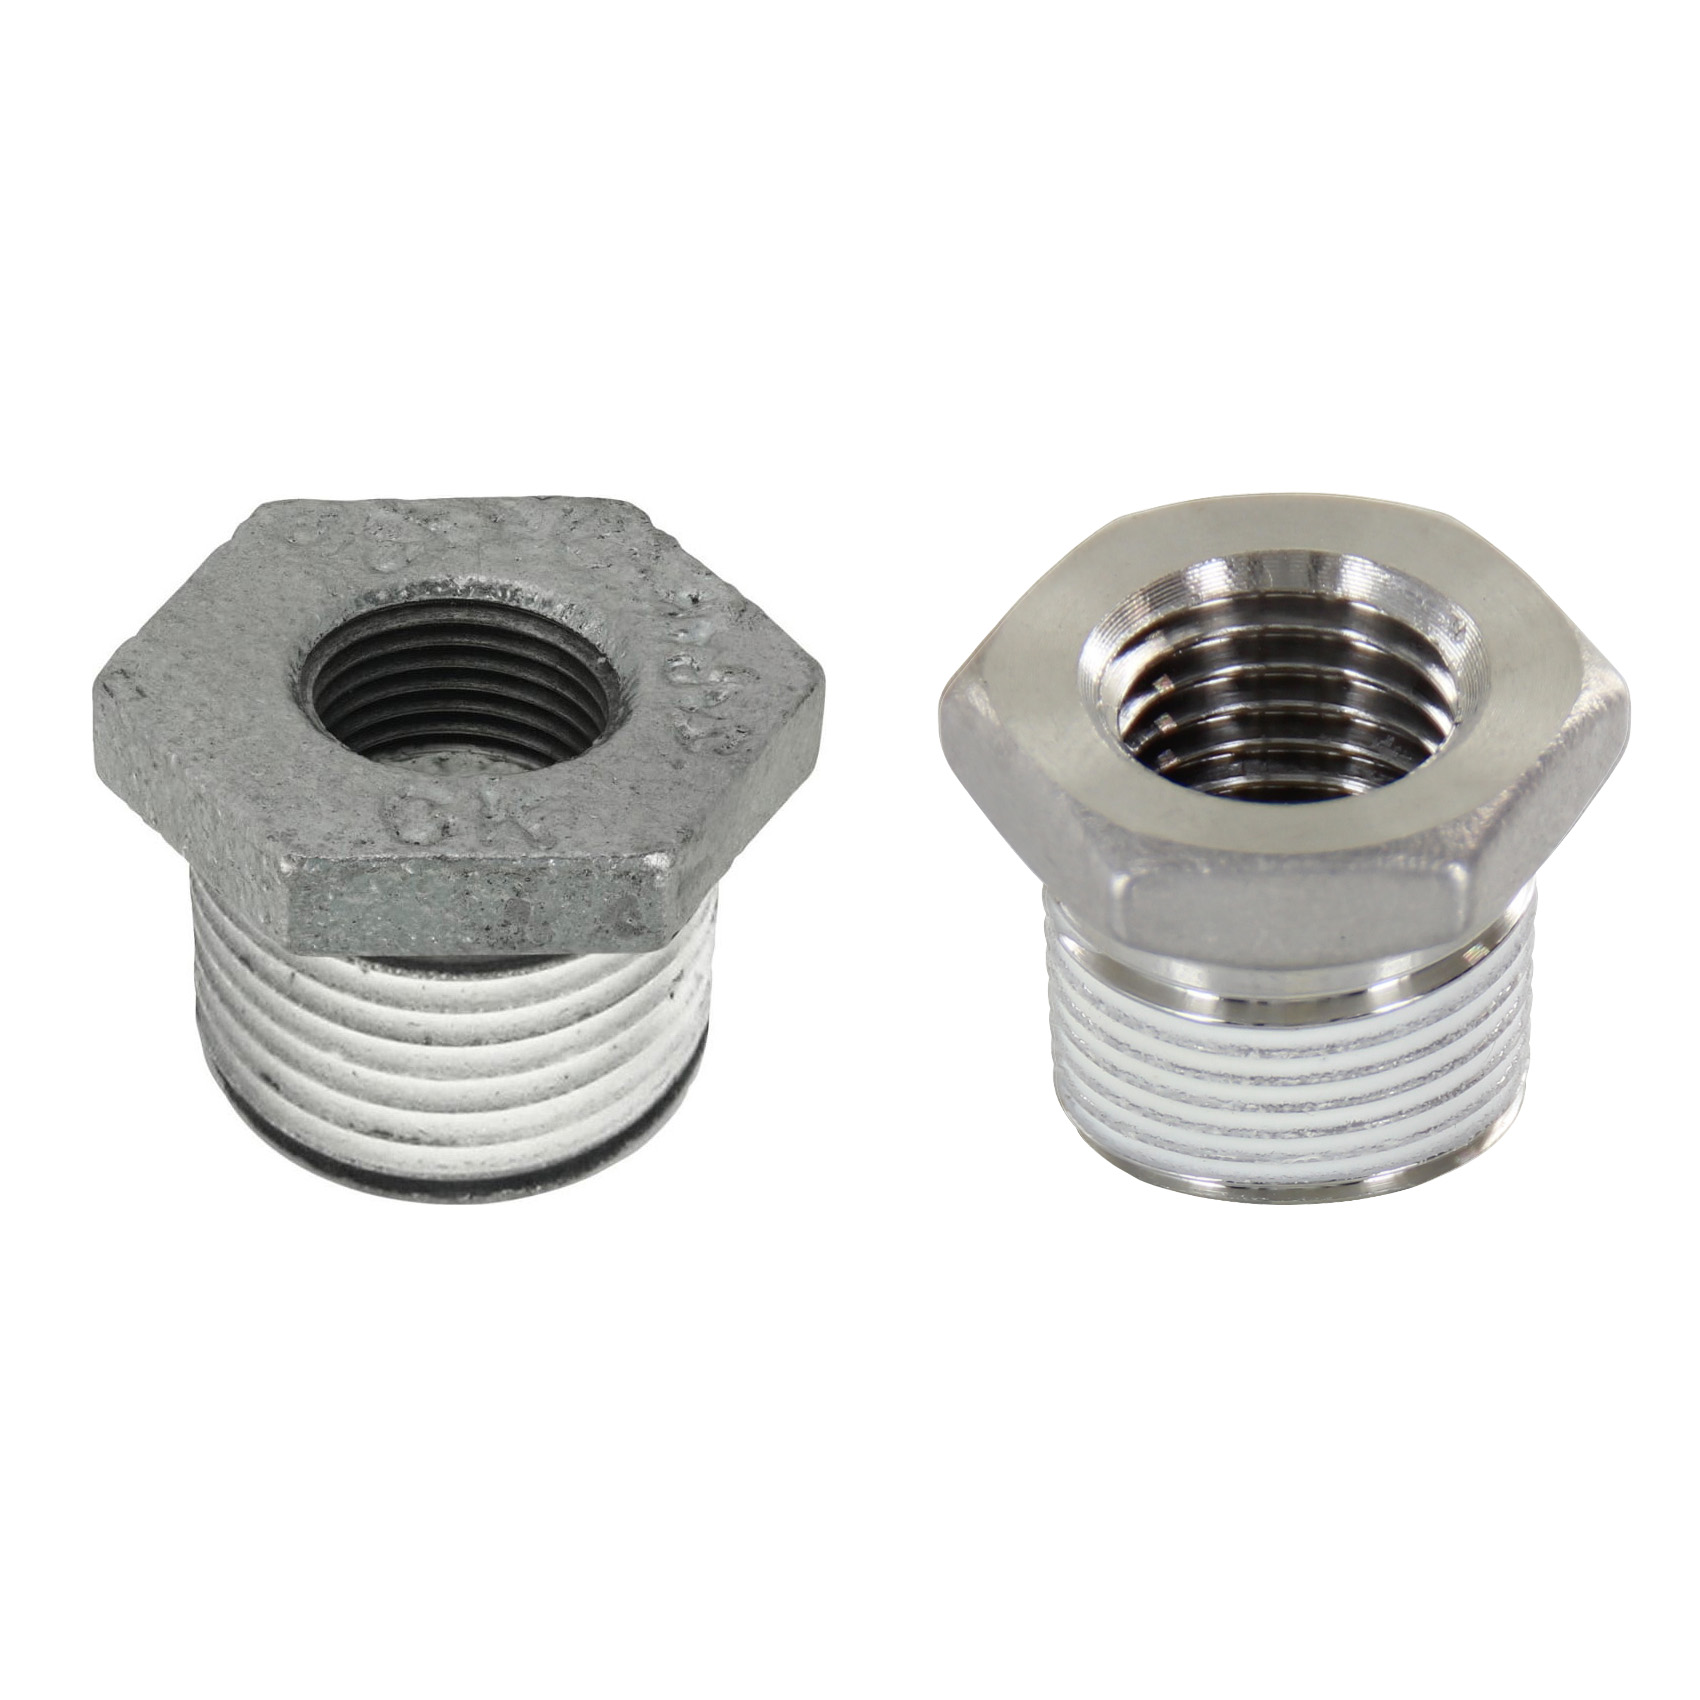 Low Pressure Screw Fittings - Thread Coated Type - Steel Pipe Fittings - Bushings SUCPB46